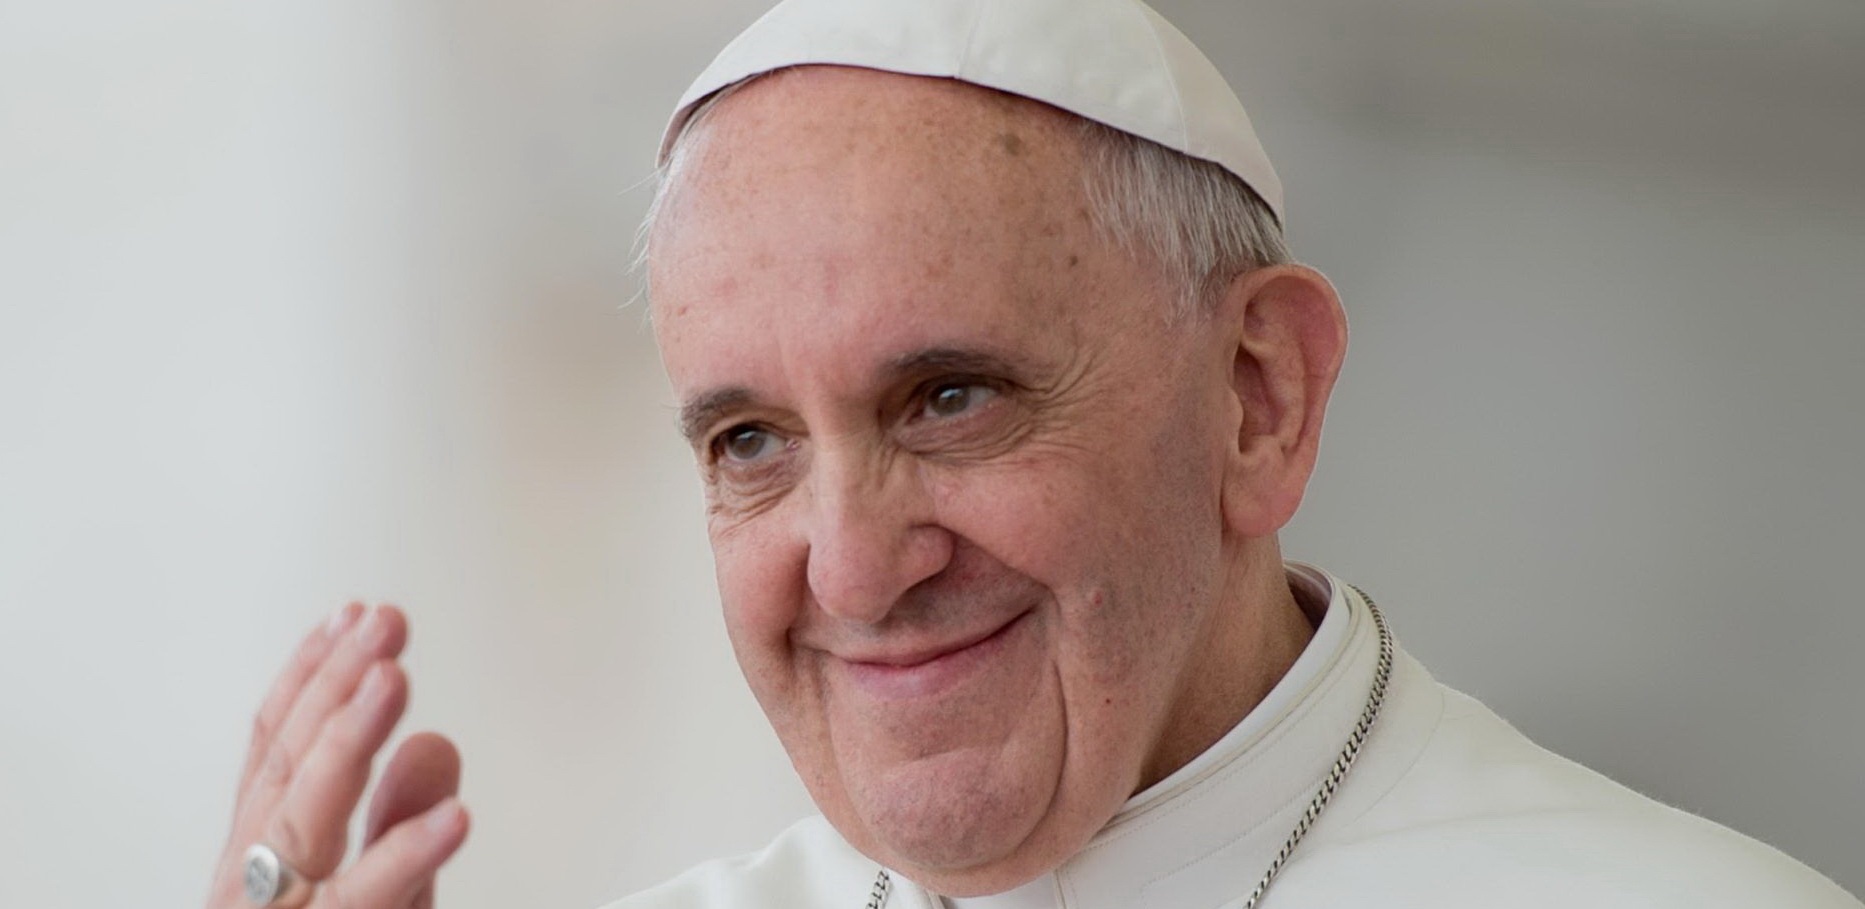 Skromn pape Frantiek v novej dokumentrnej minisrii